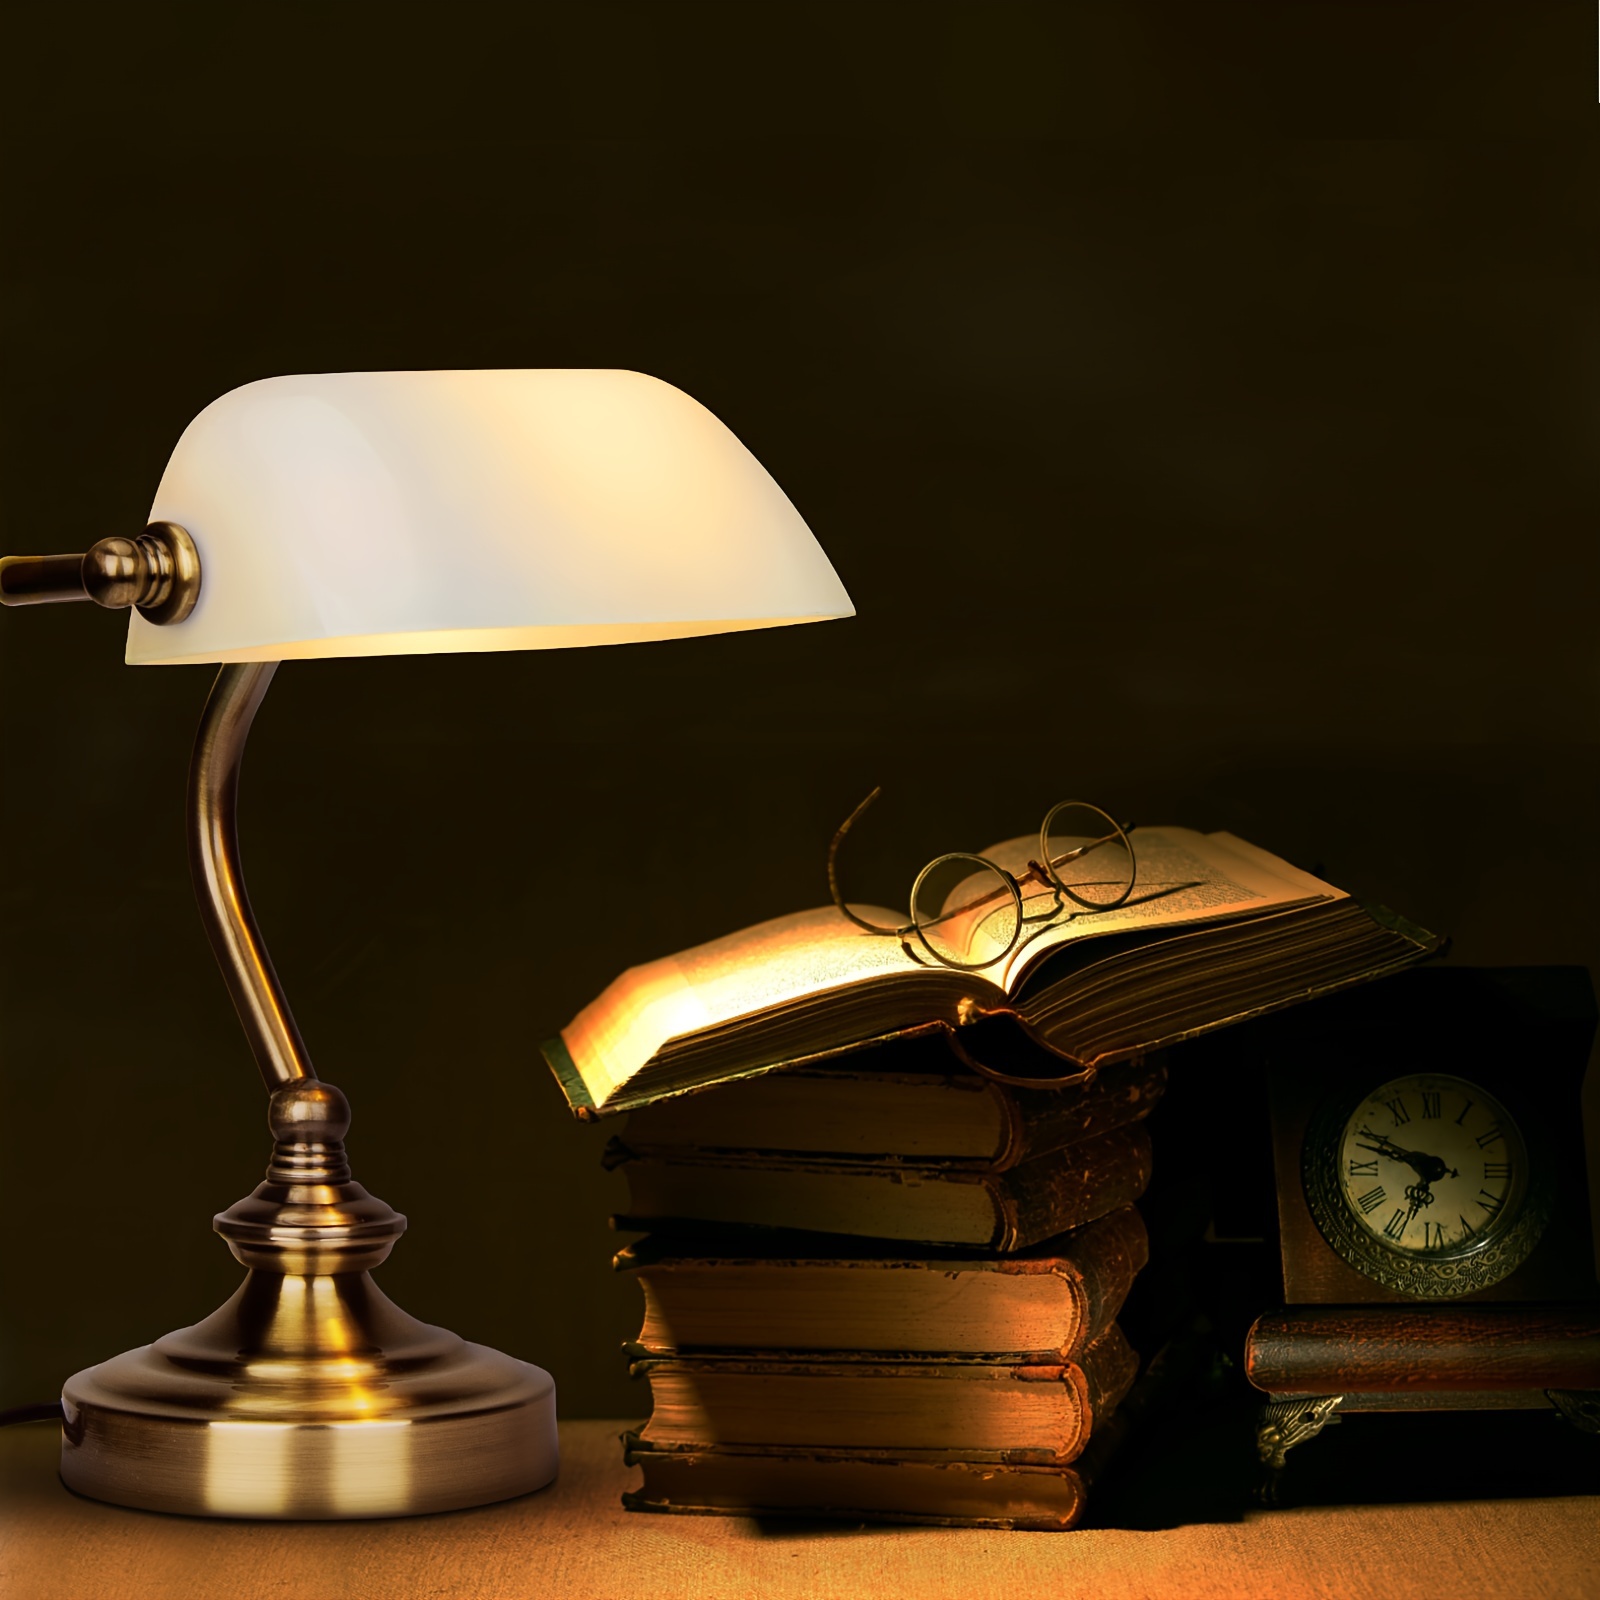 Bankers desk lamp, Library lamp, Bankers lamp